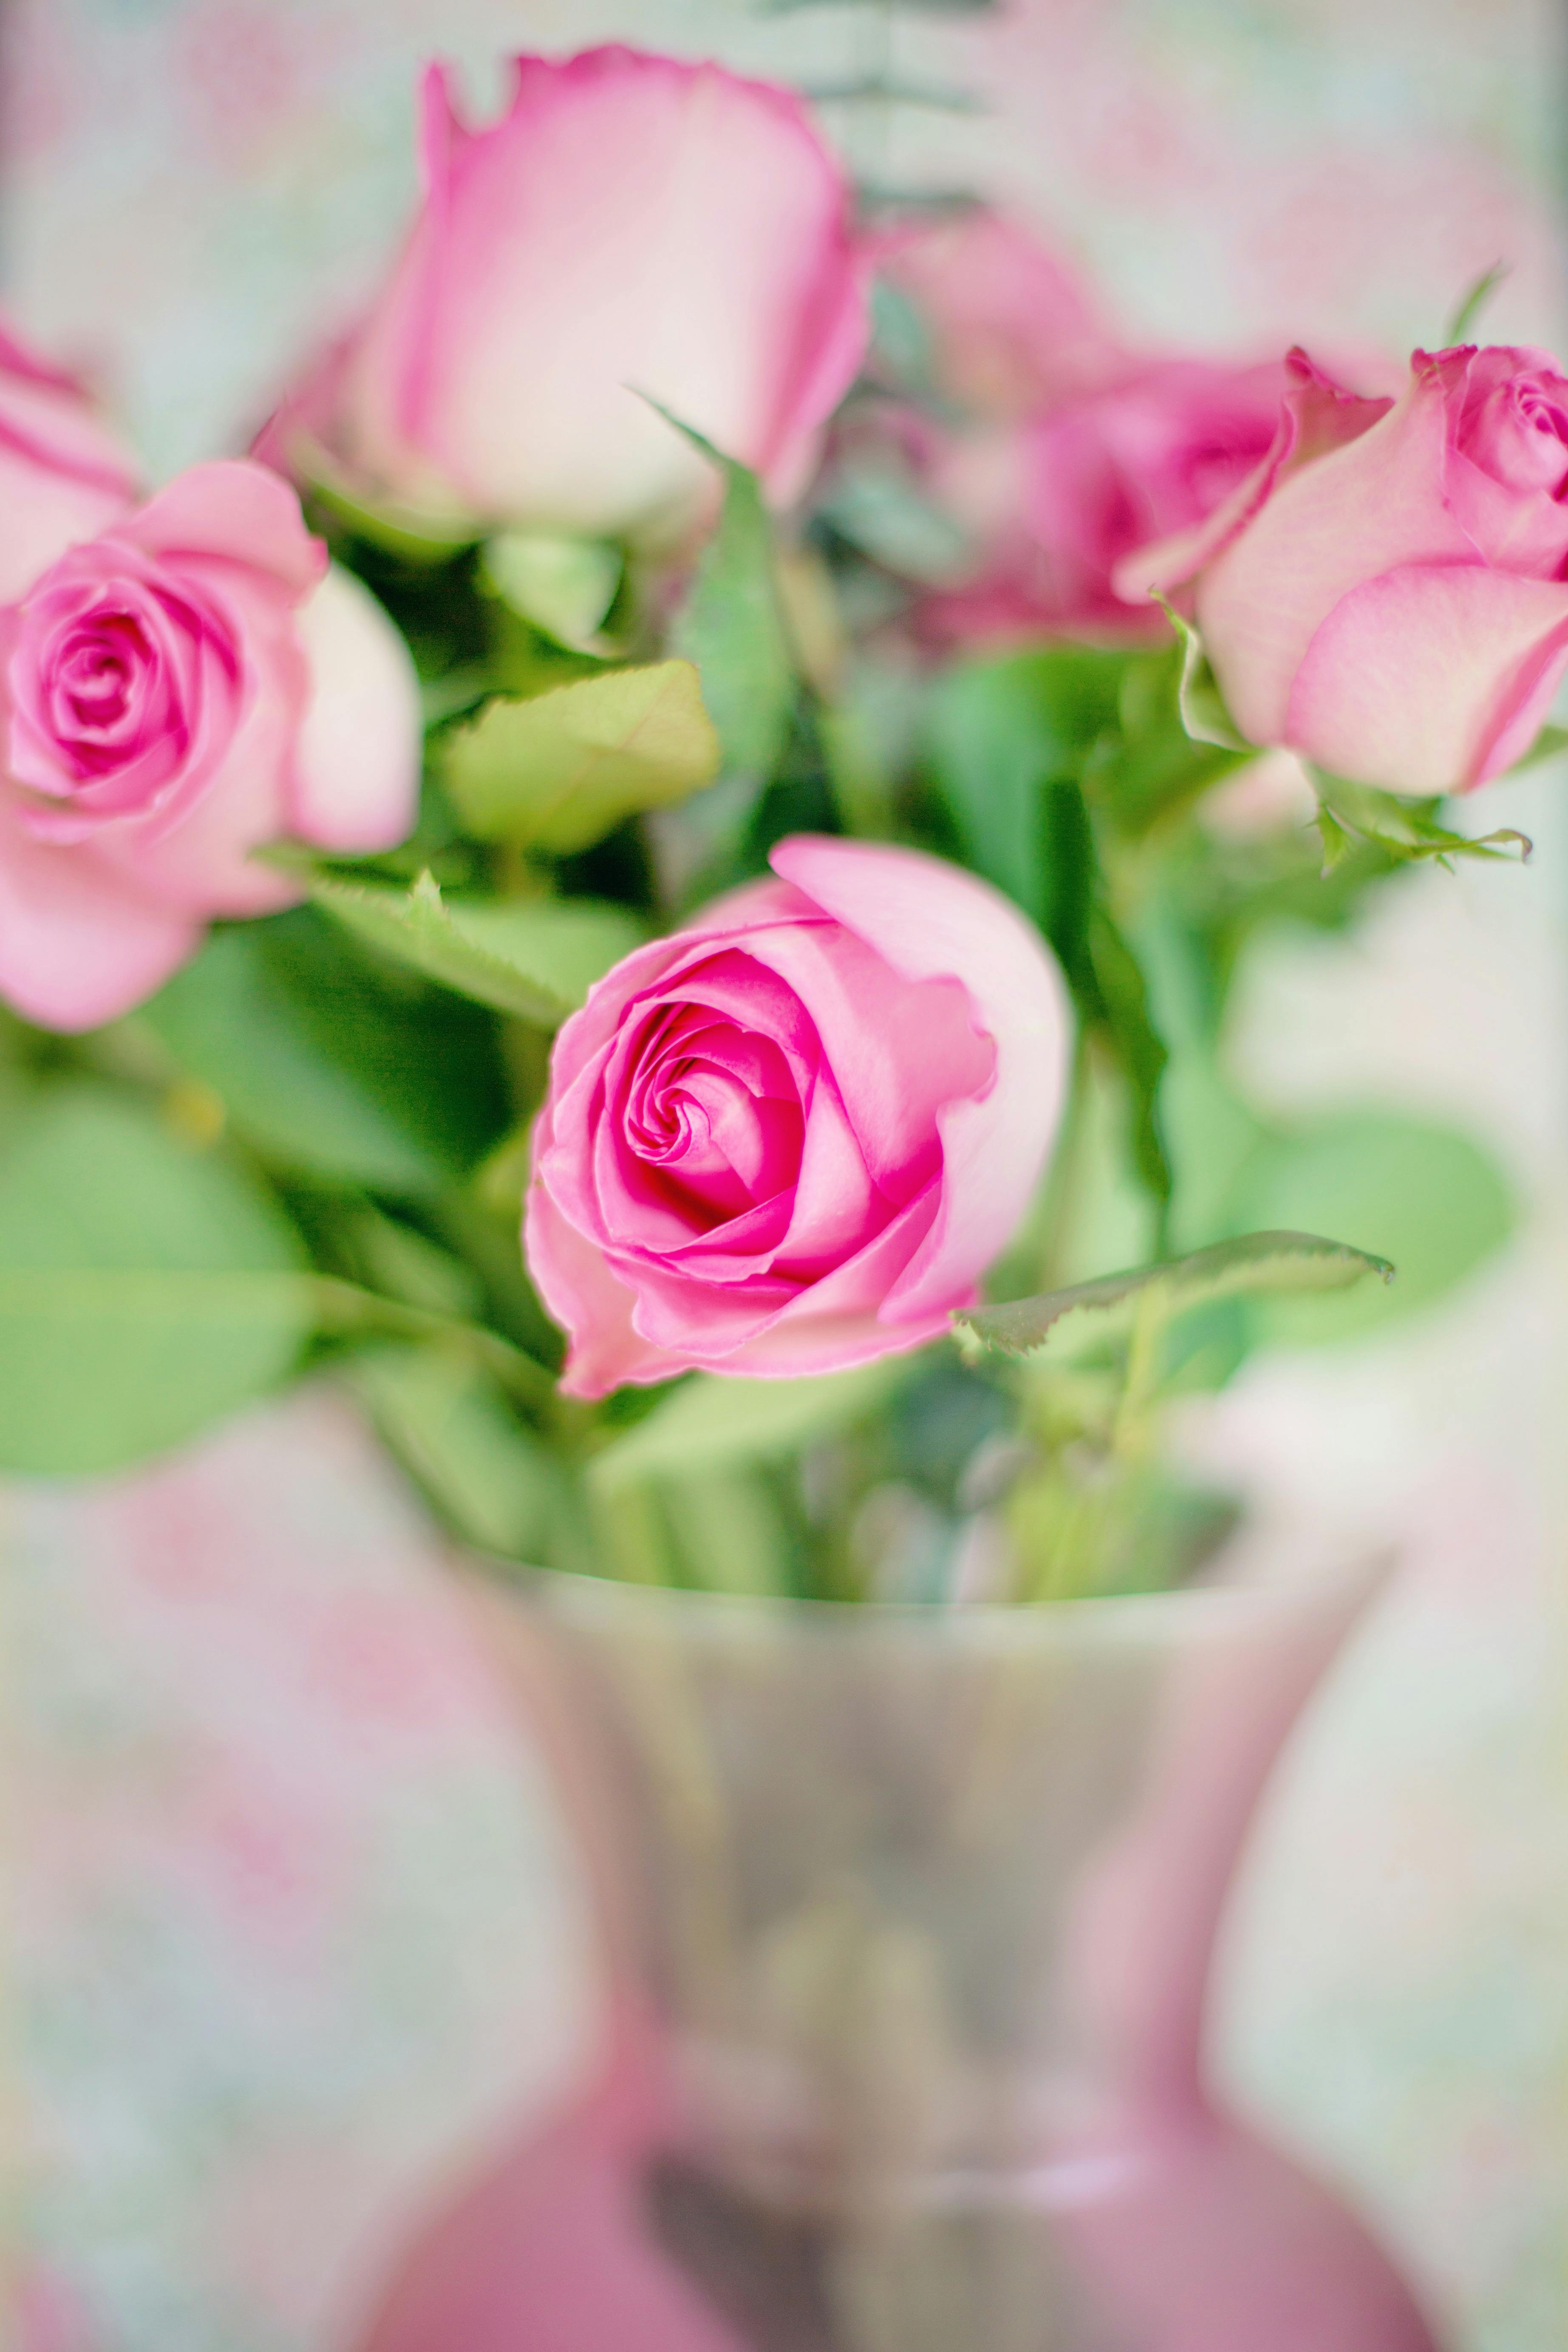 Pink Flowers Roses  Free photo on Pixabay  Pixabay